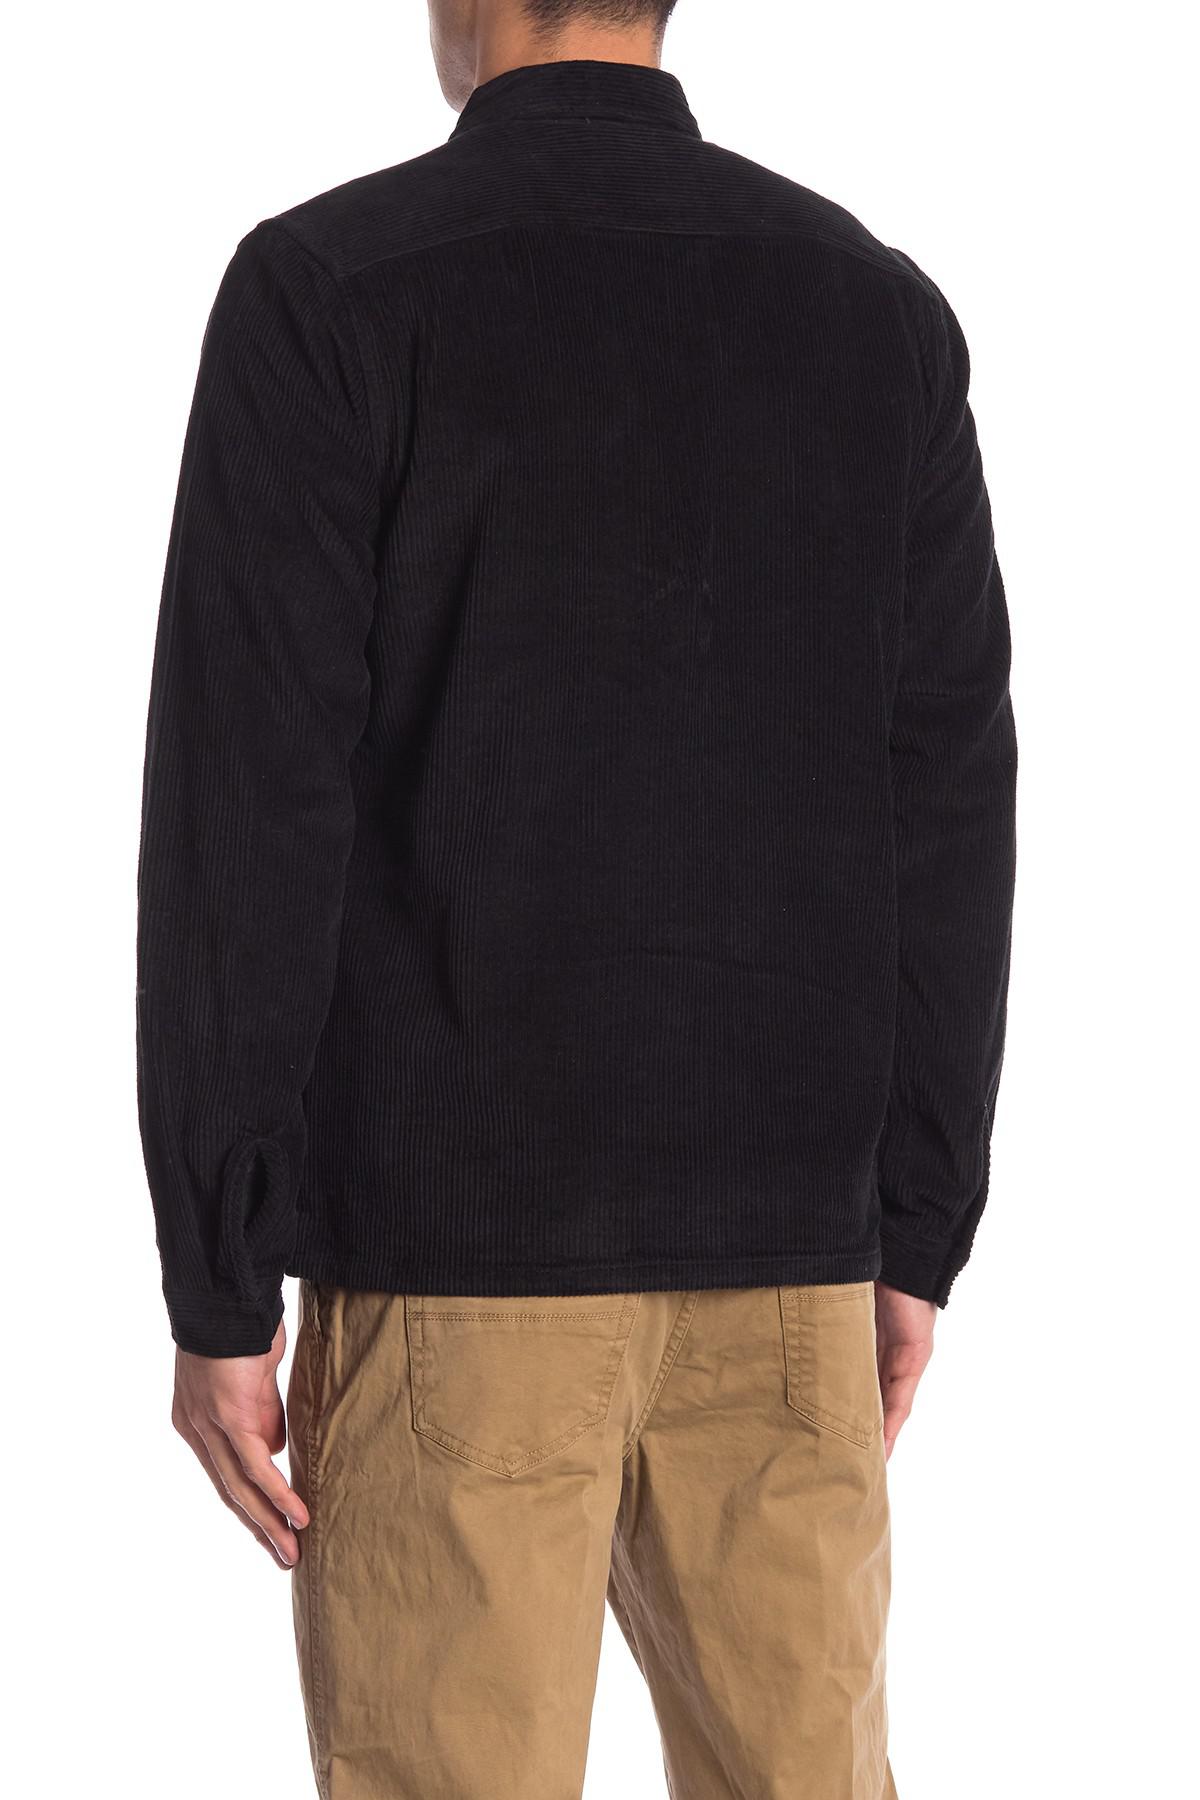 Wesc Nick Corduroy Zip Shirt Jacket in Black for Men - Lyst